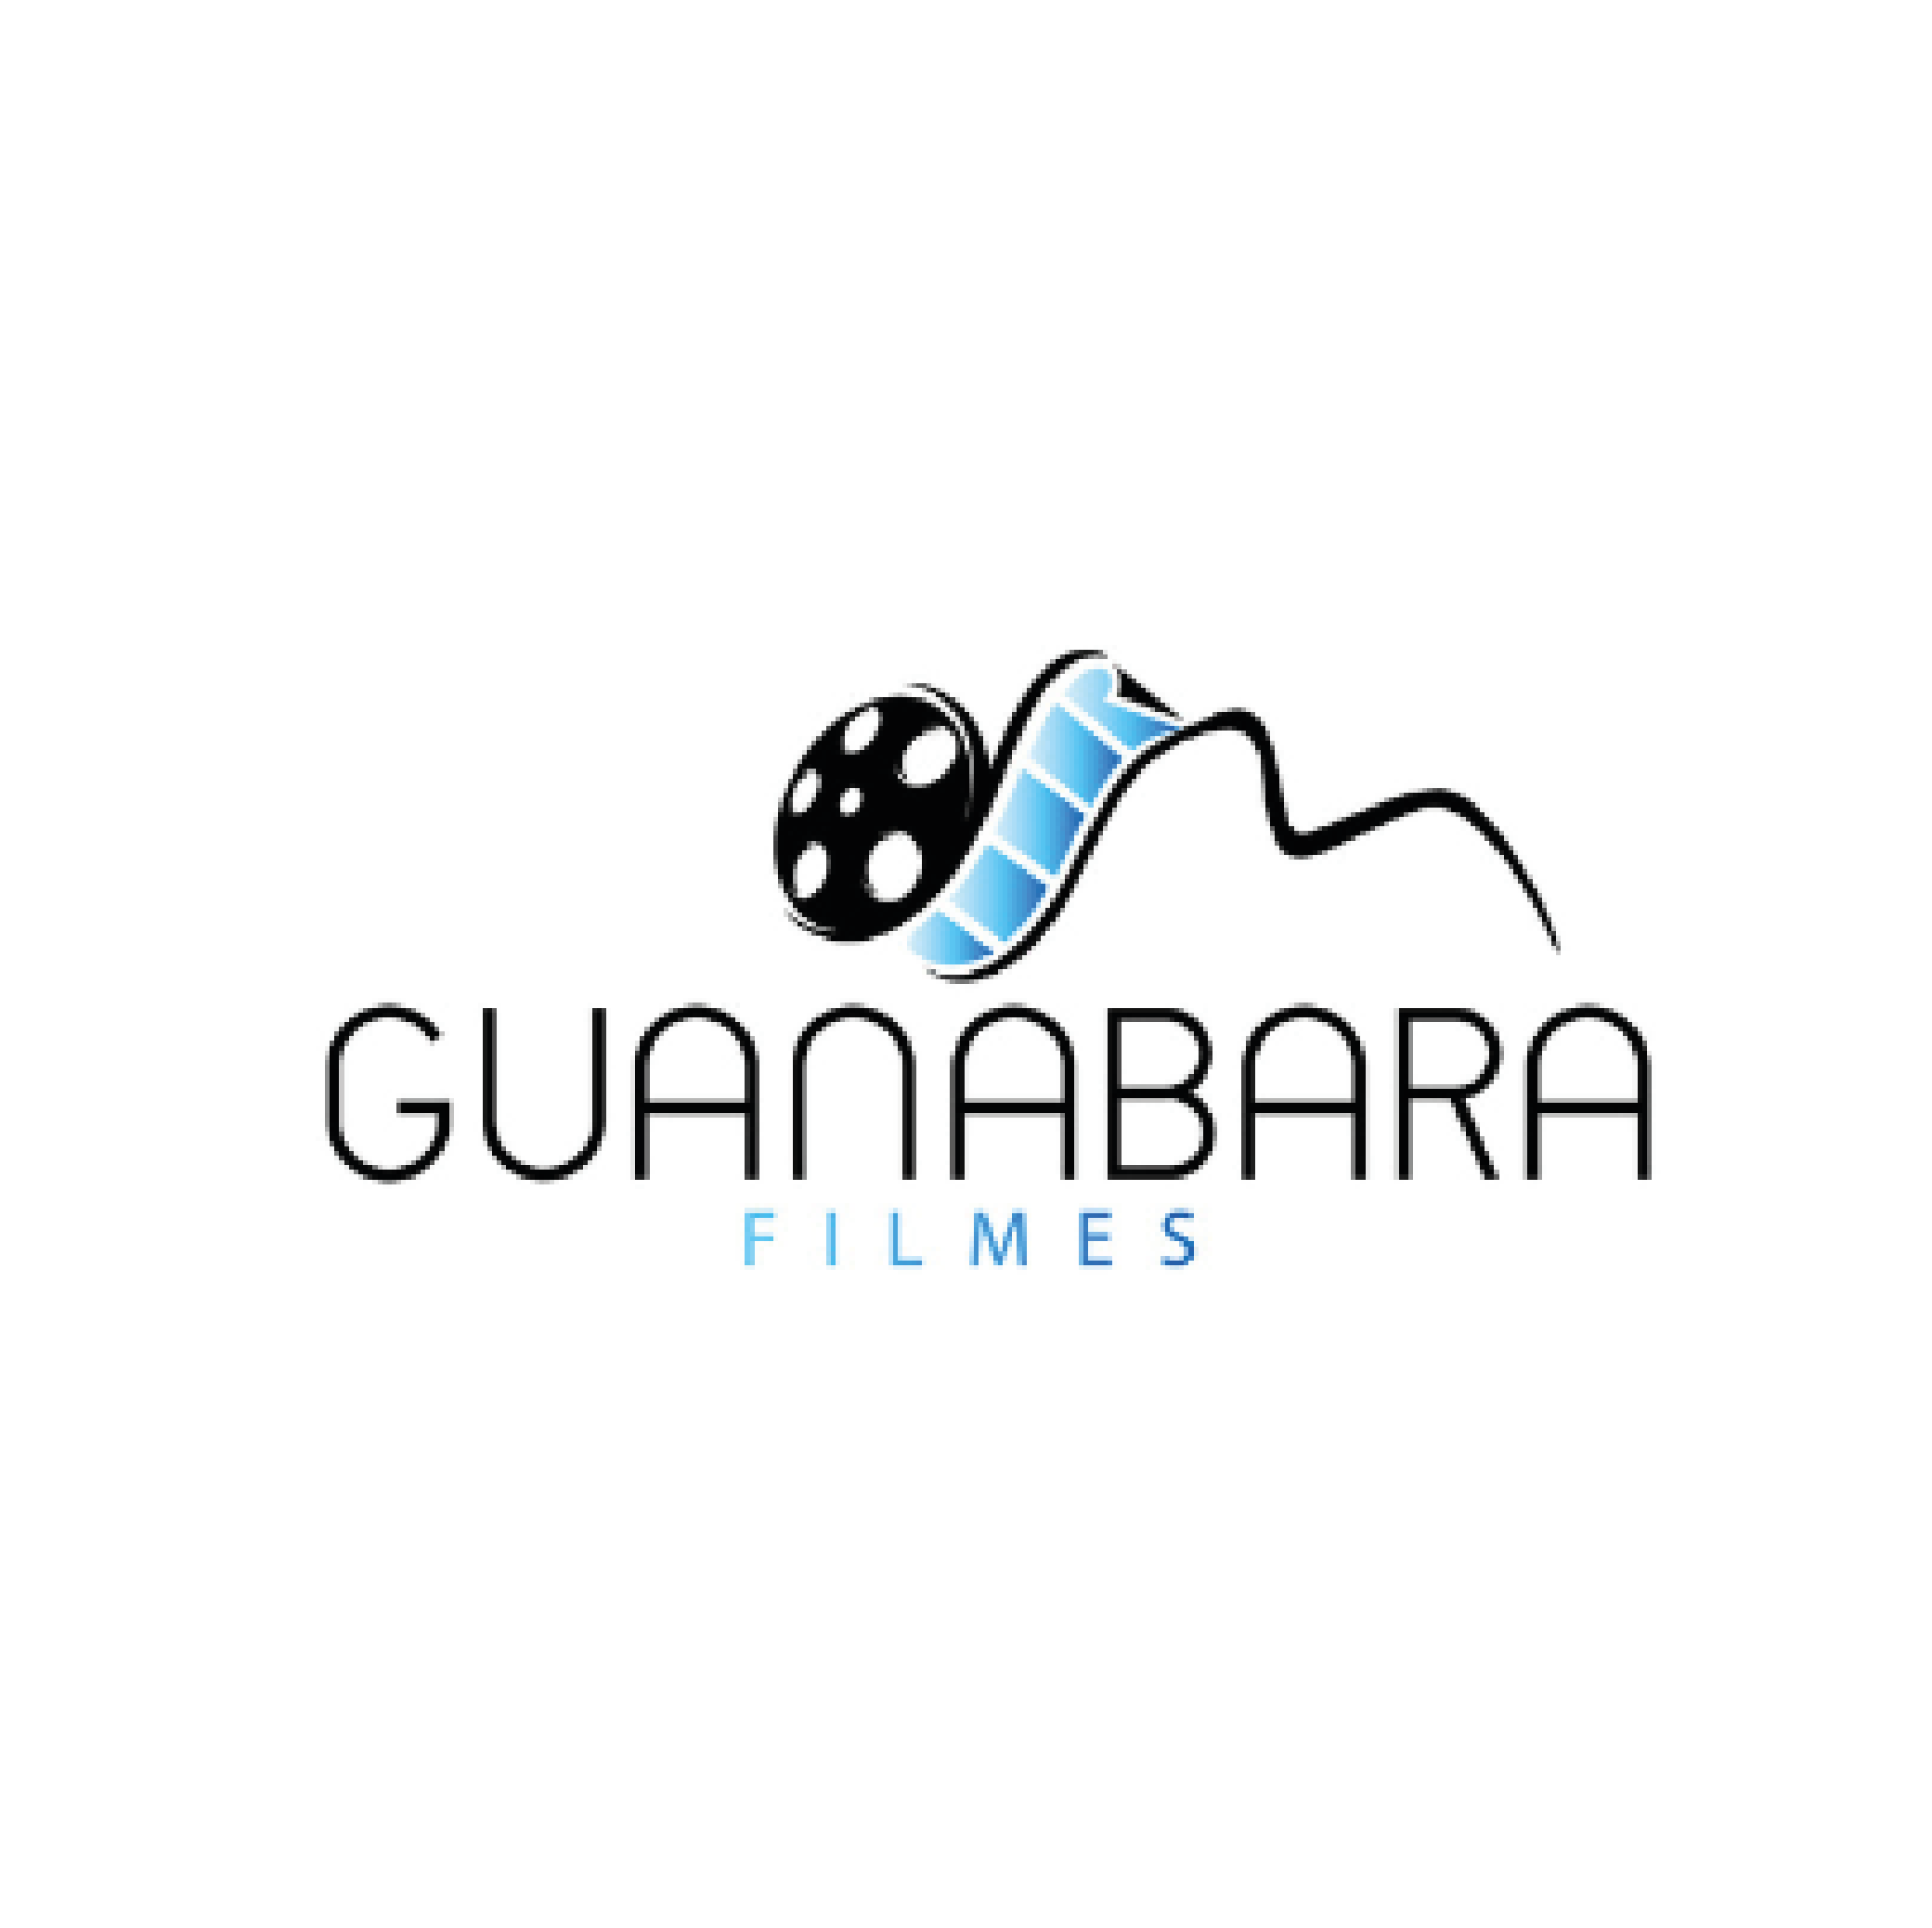 GUabnabara Filmes